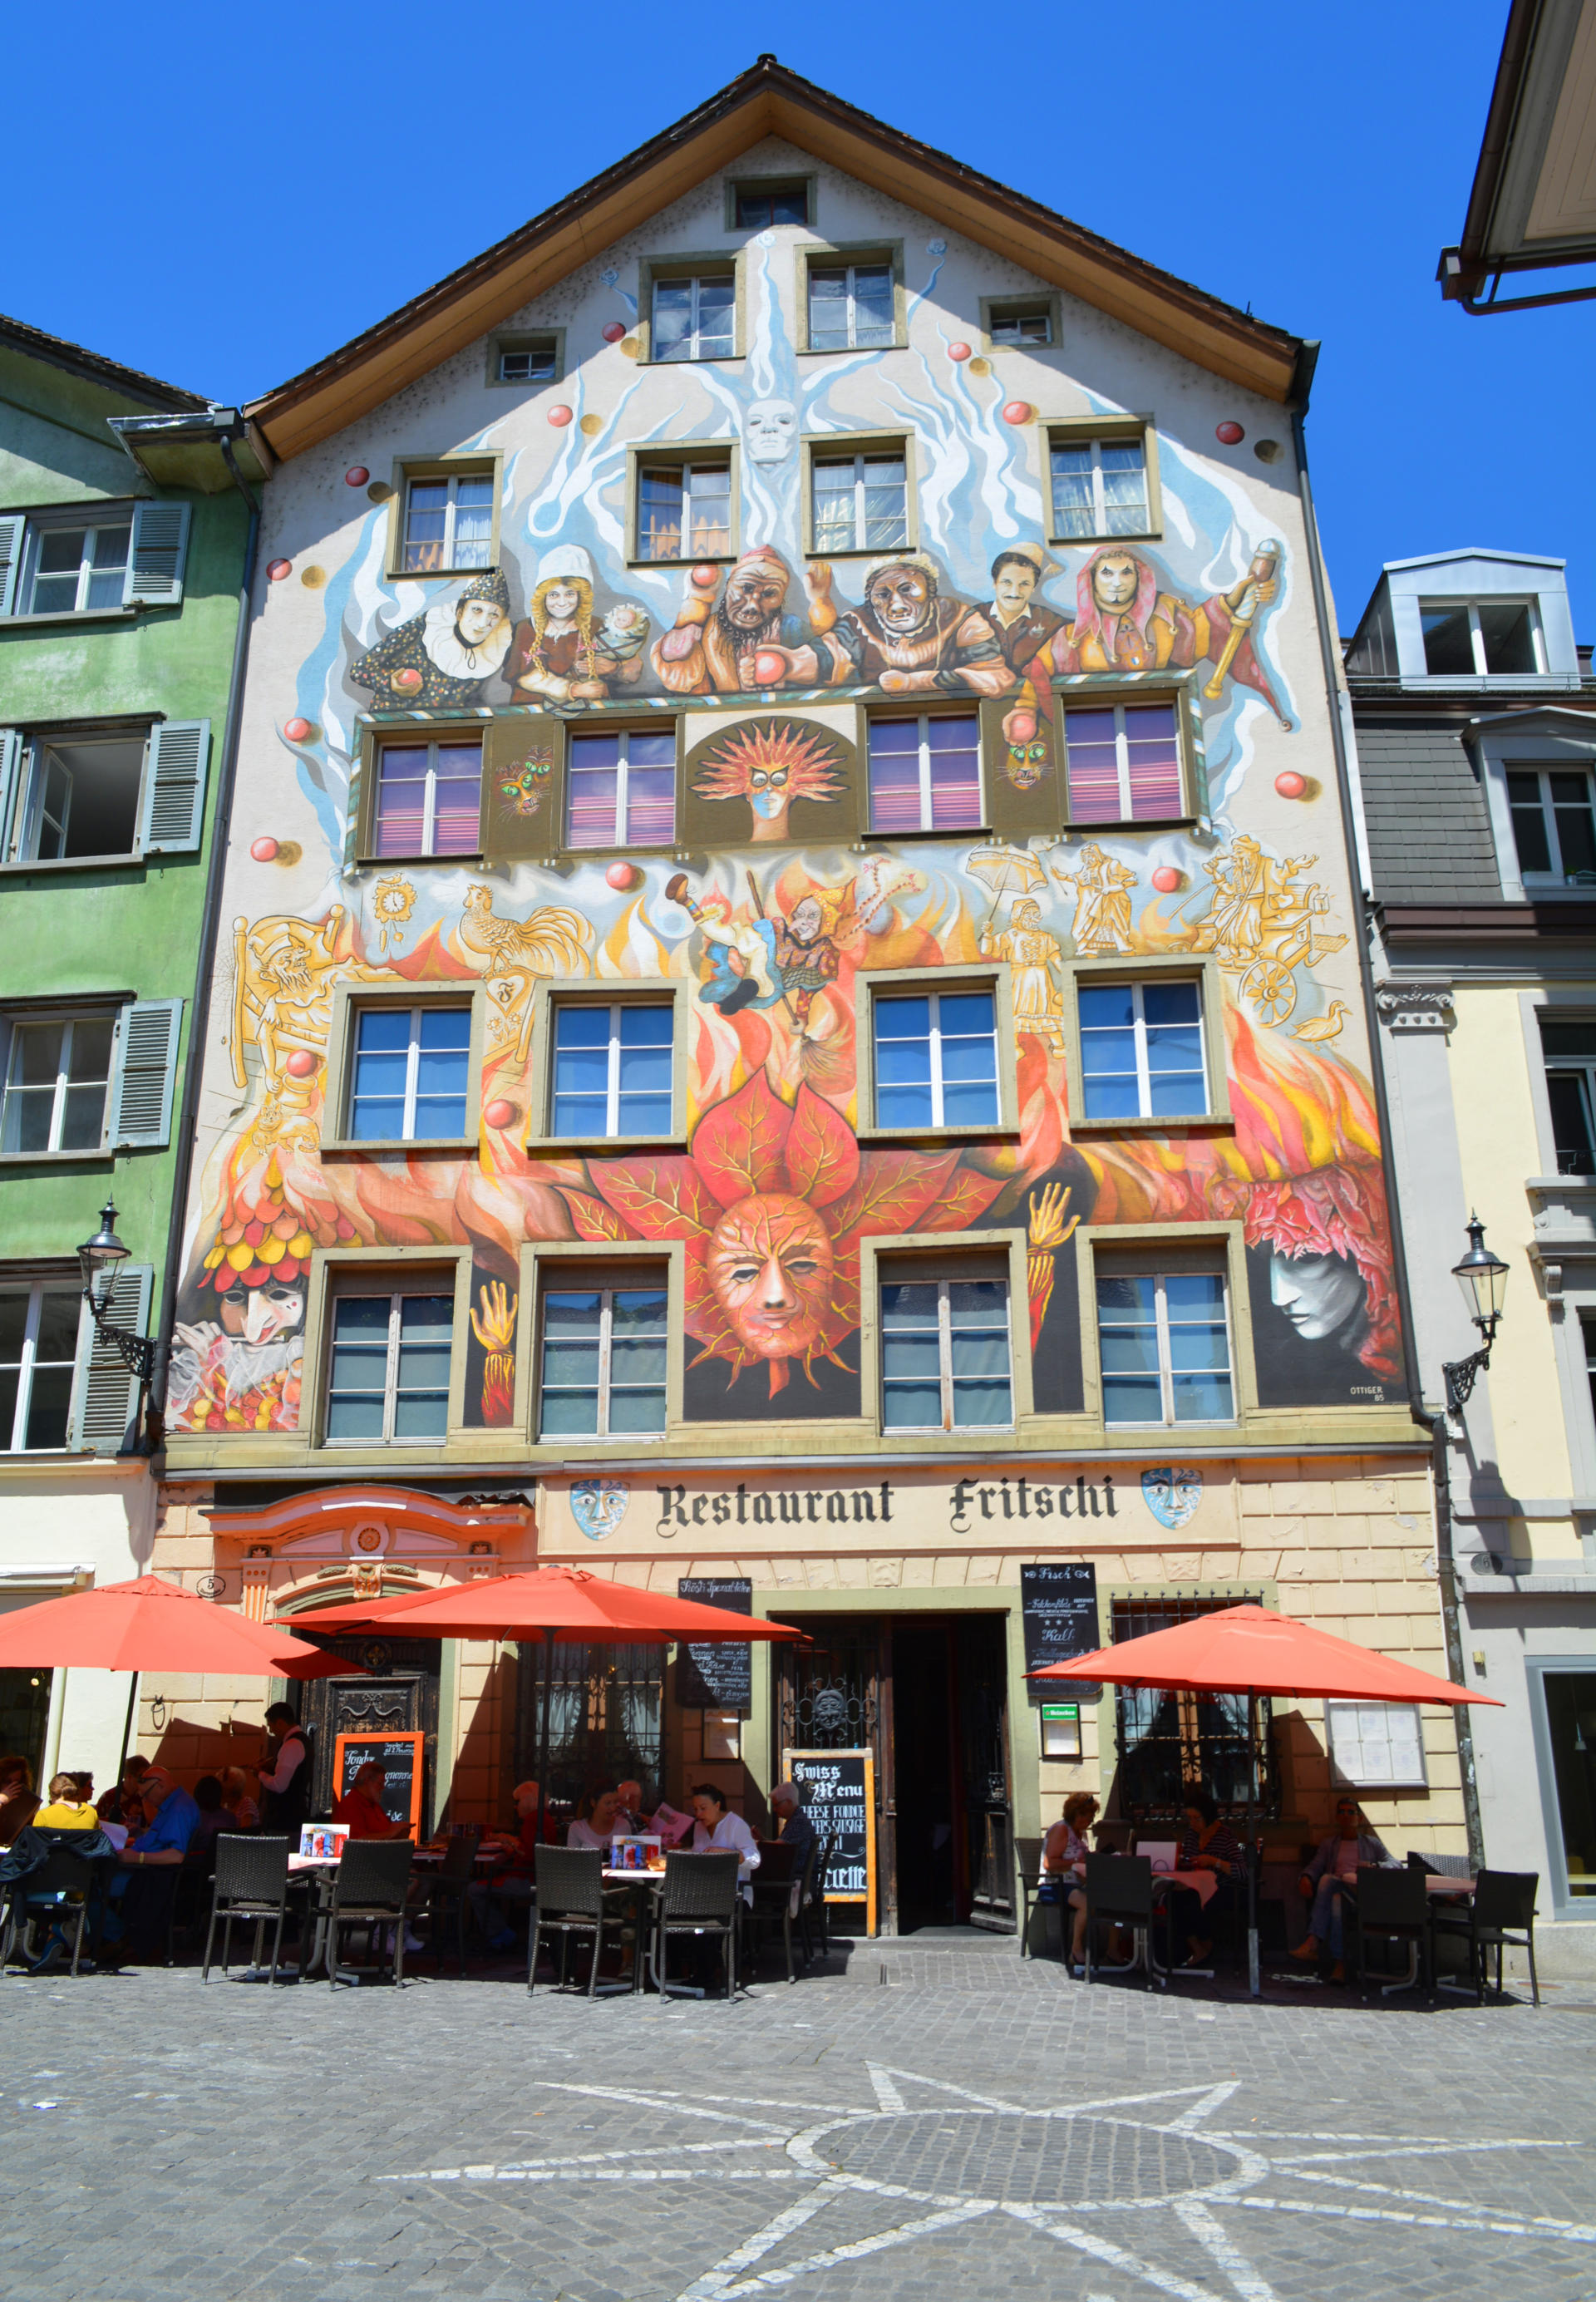 Lucerne, Switzerland 